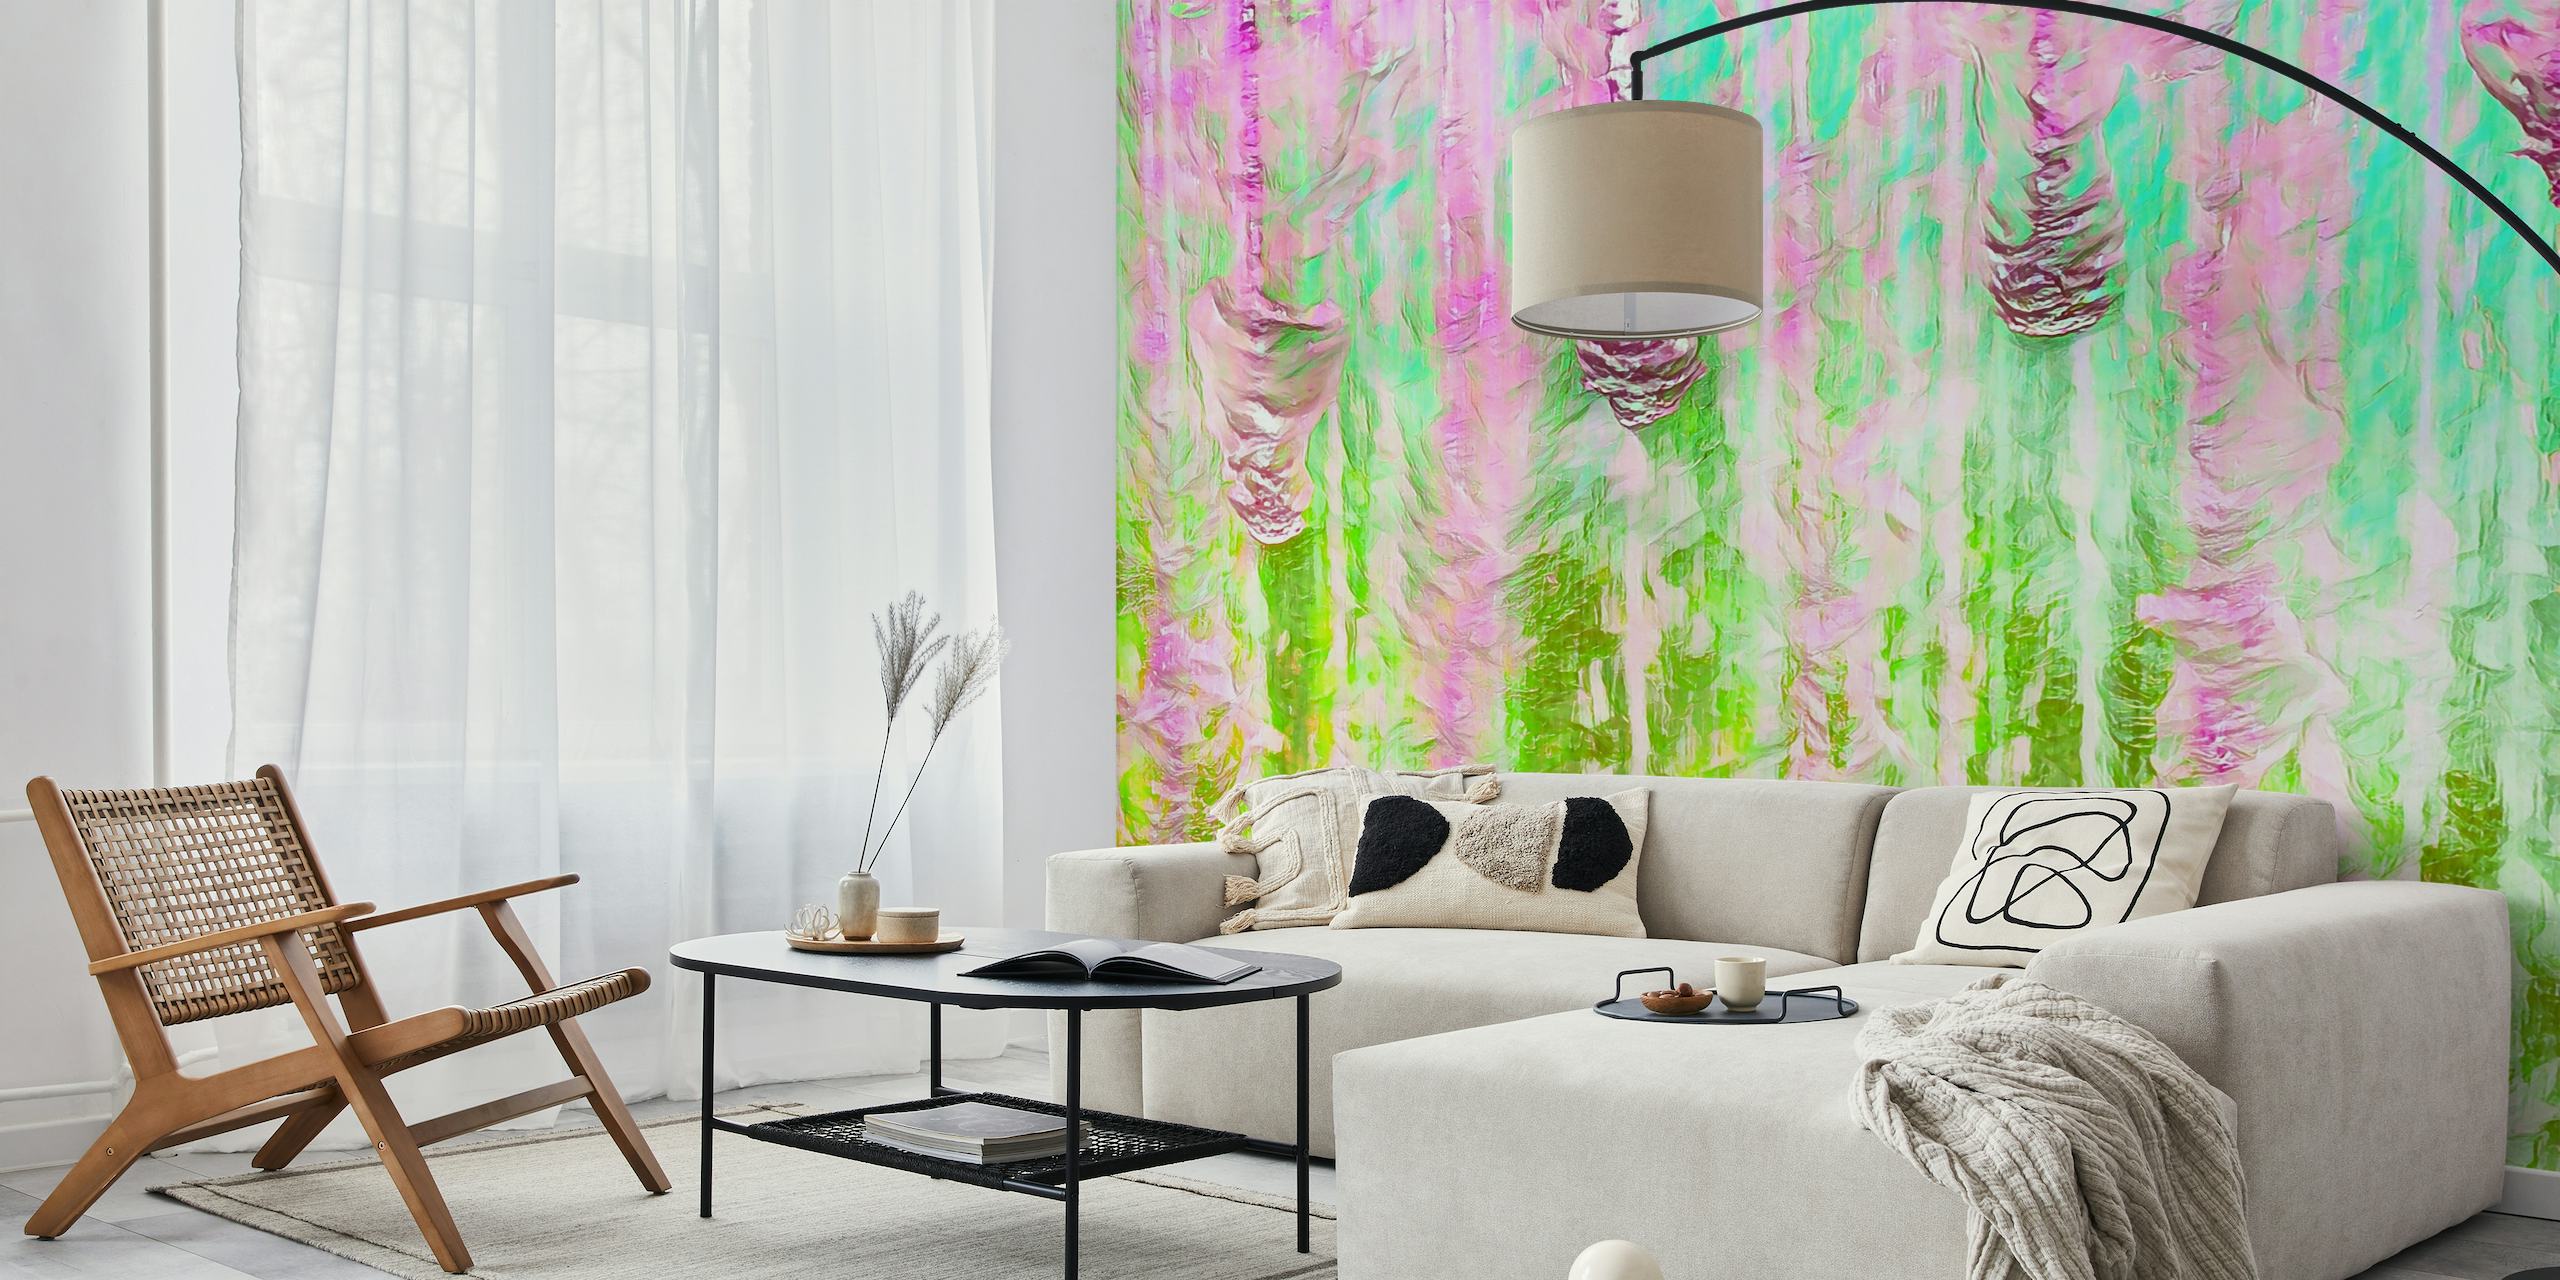 Barevná abstraktní nástěnná malba Happy Liquid Paint Flow se zářivými růžovými a zelenými barvami vytvářející efekt tekoucího akvarelu.